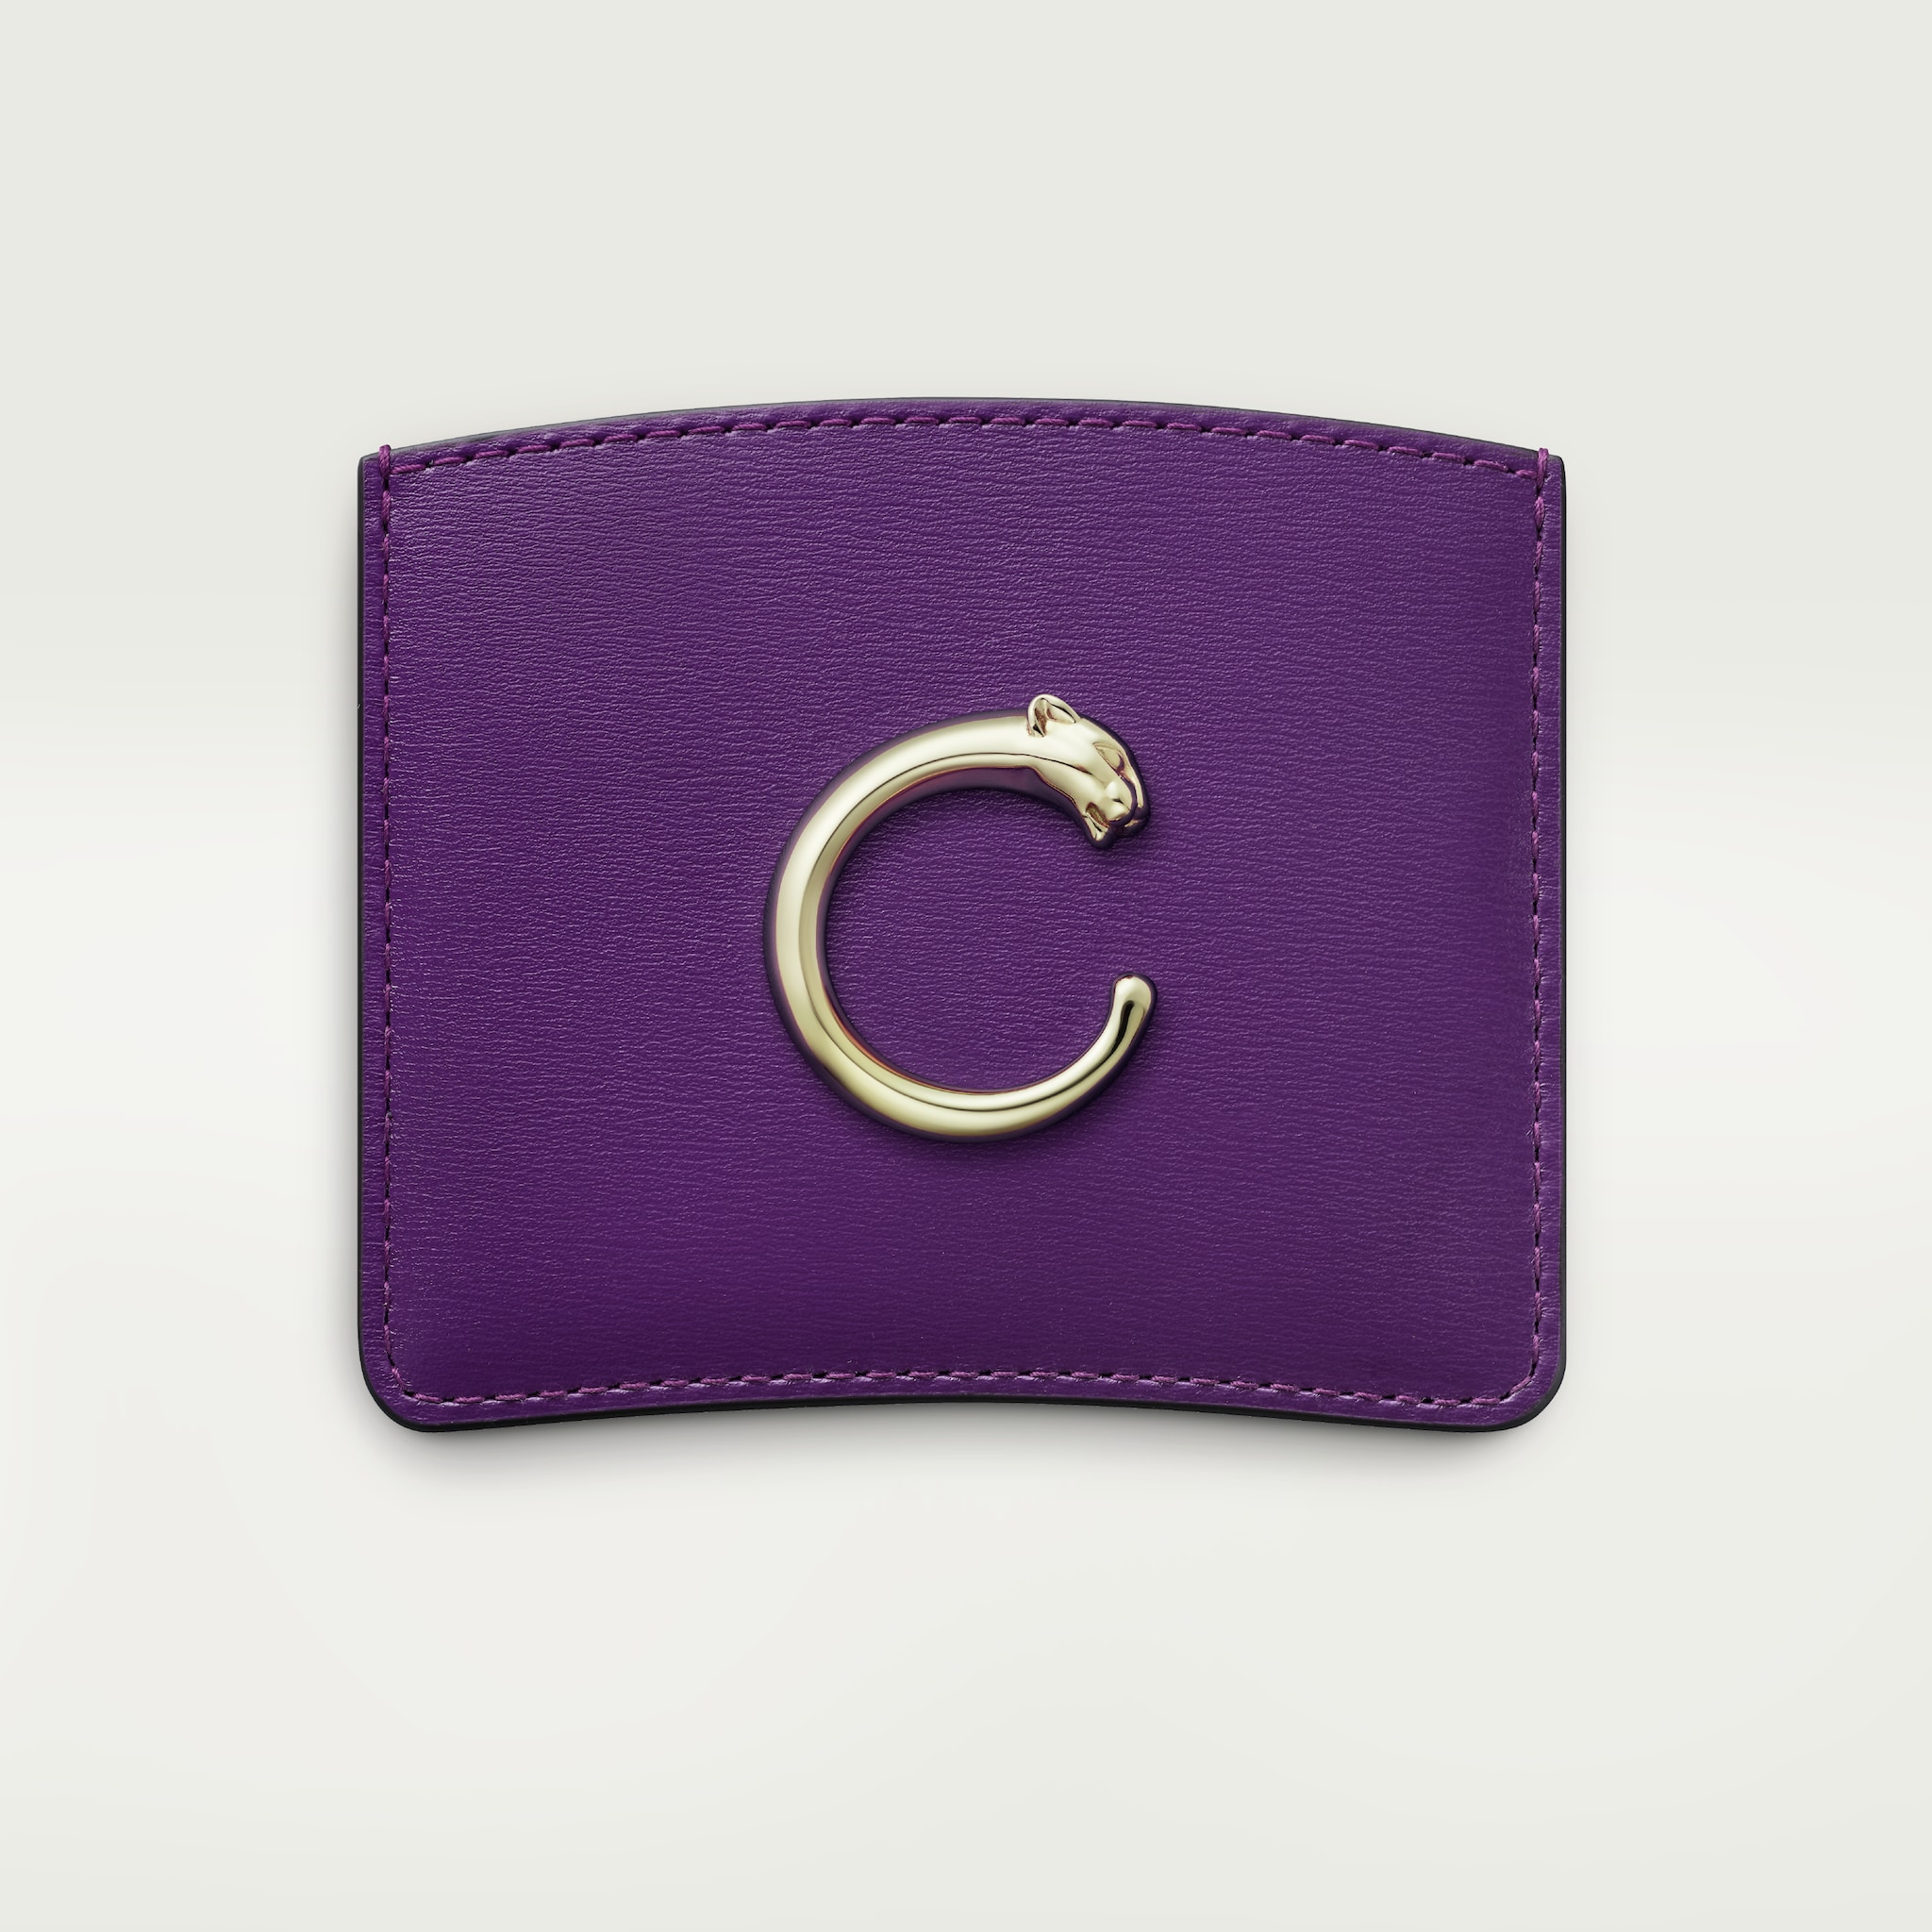 Panthère de Cartier Small Leather Goods, Card holderPurple calfskin, golden finish